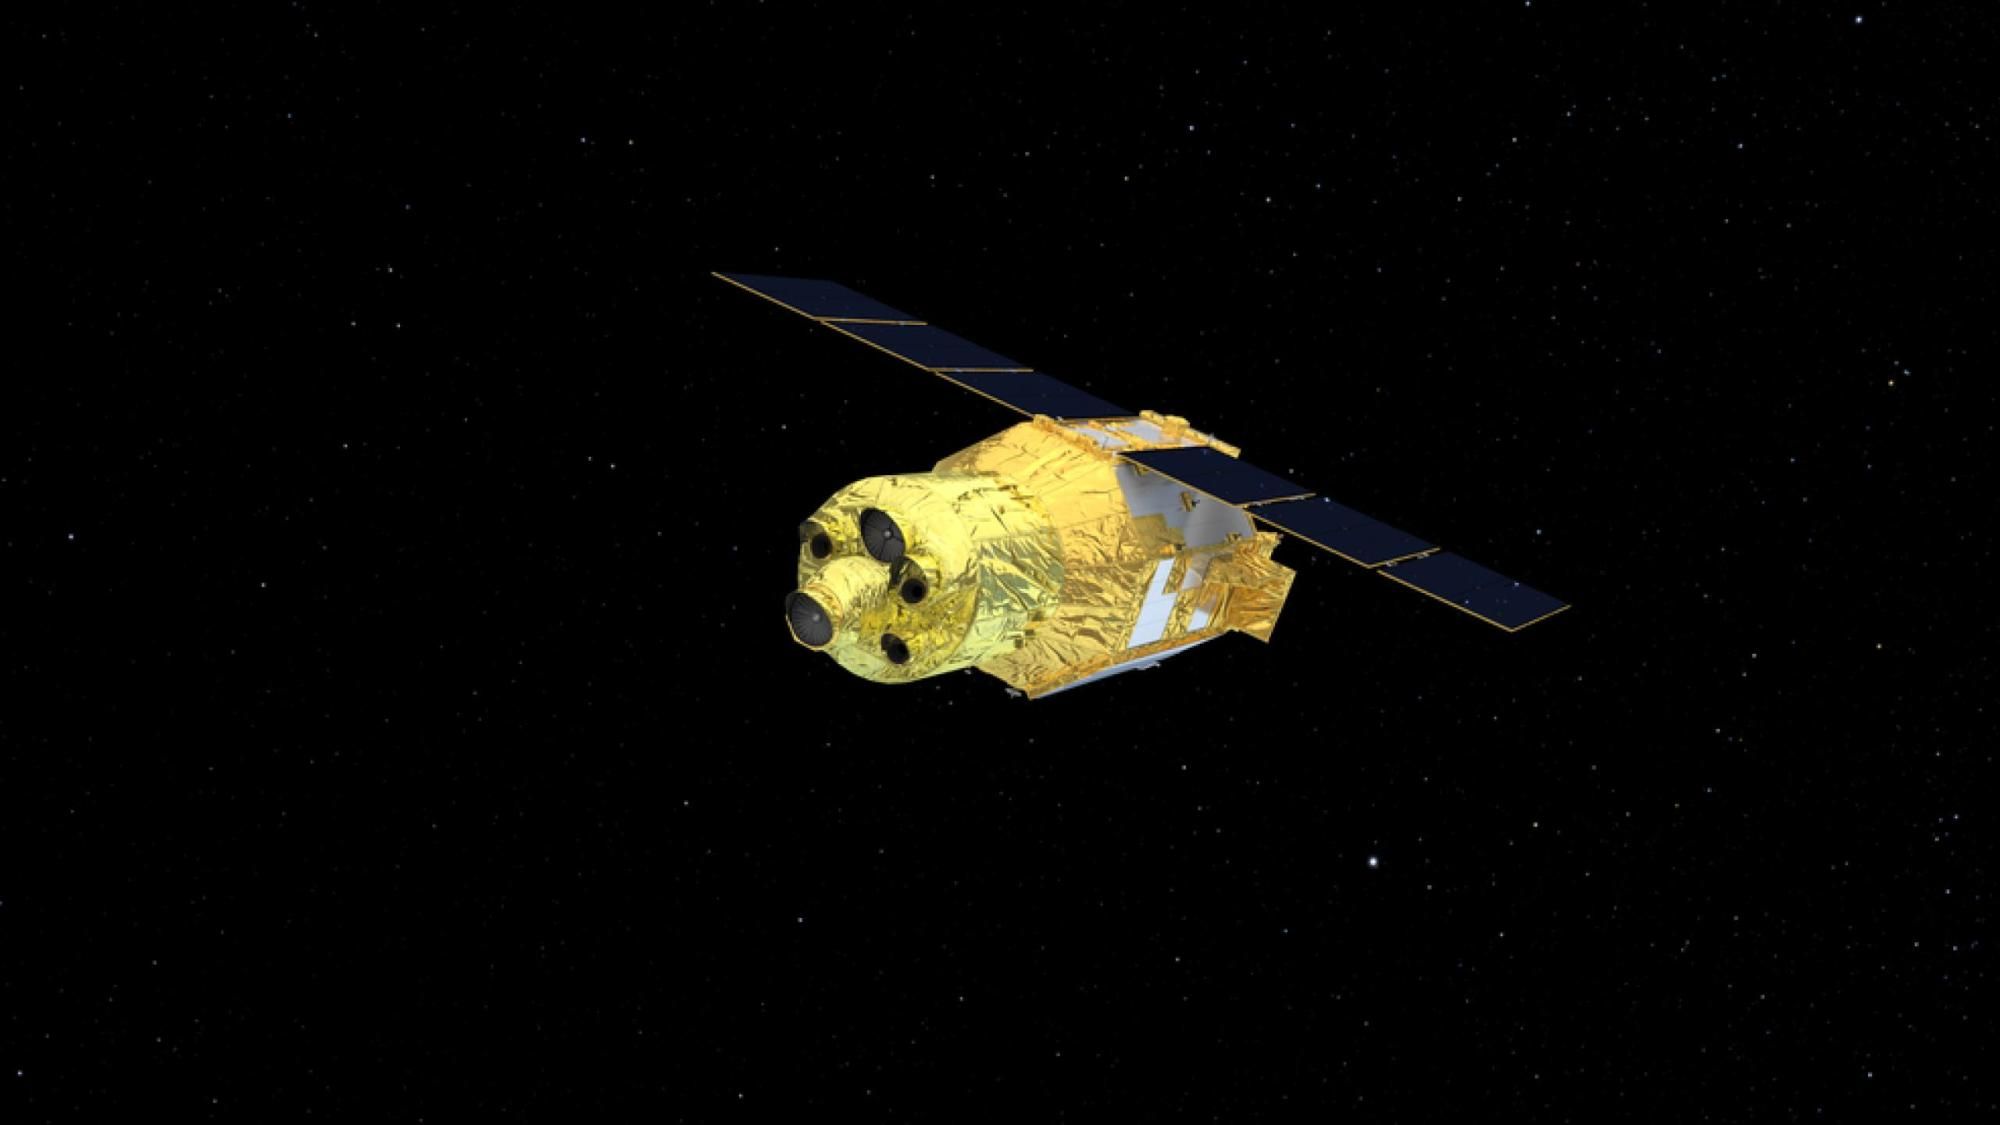 El satélite XRISM, que se muestra aquí en una ilustración, es una misión de rayos X que estudiará algunos de los objetos más energéticos del universo.